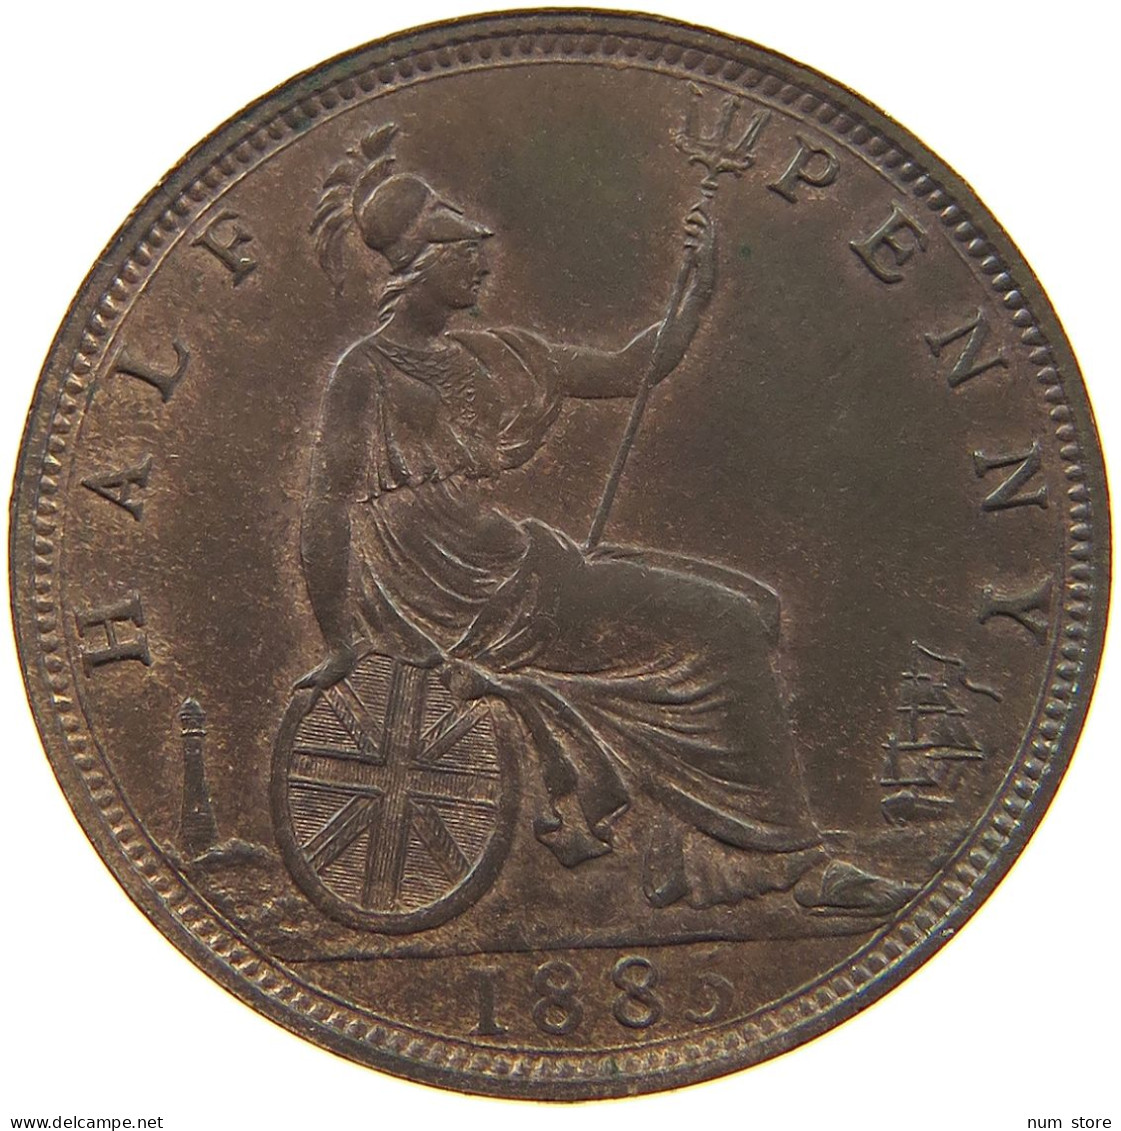 GREAT BRITAIN HALF PENNY 1885 Victoria 1837-1901 #t118 0225 - C. 1/2 Penny